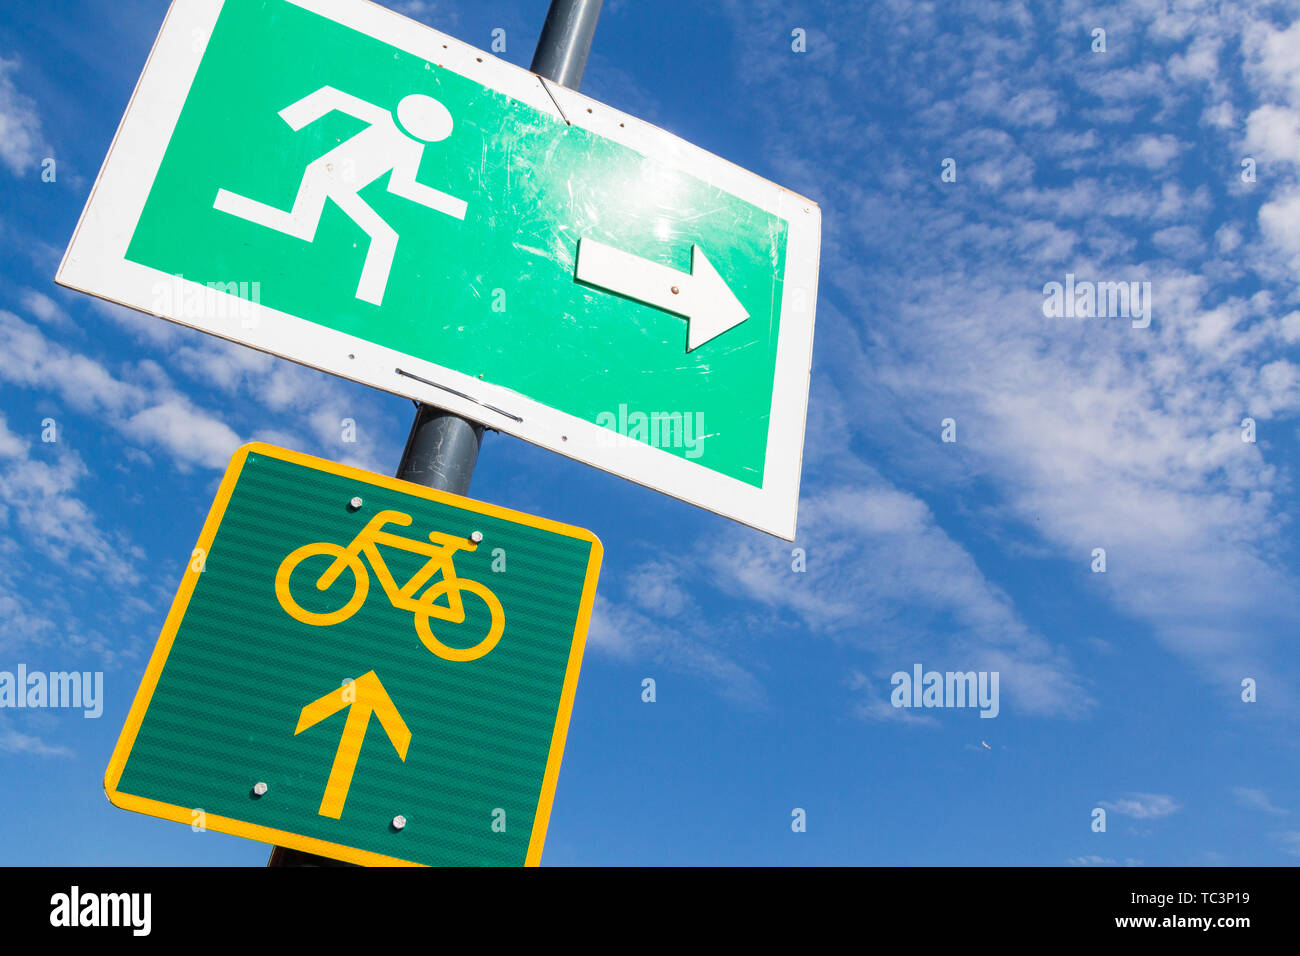 La sortie d'urgence et circuits vélo inscription fixée sur poteau d'éclairage de rue contre le ciel bleu Banque D'Images